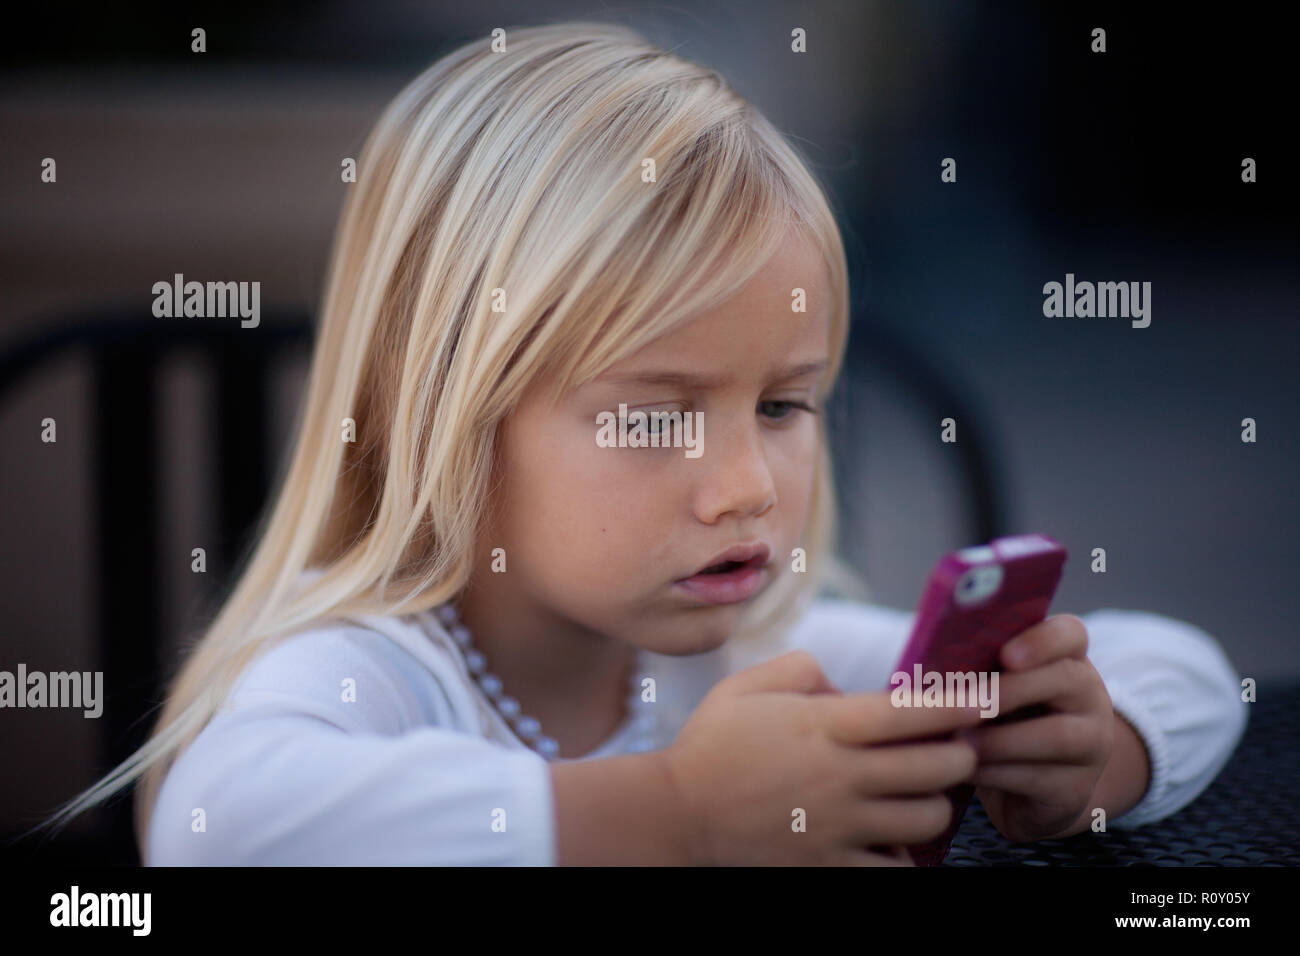 Jeune fille blonde à la rose au téléphone cellulaire avec un intense regard sur son visage. Banque D'Images